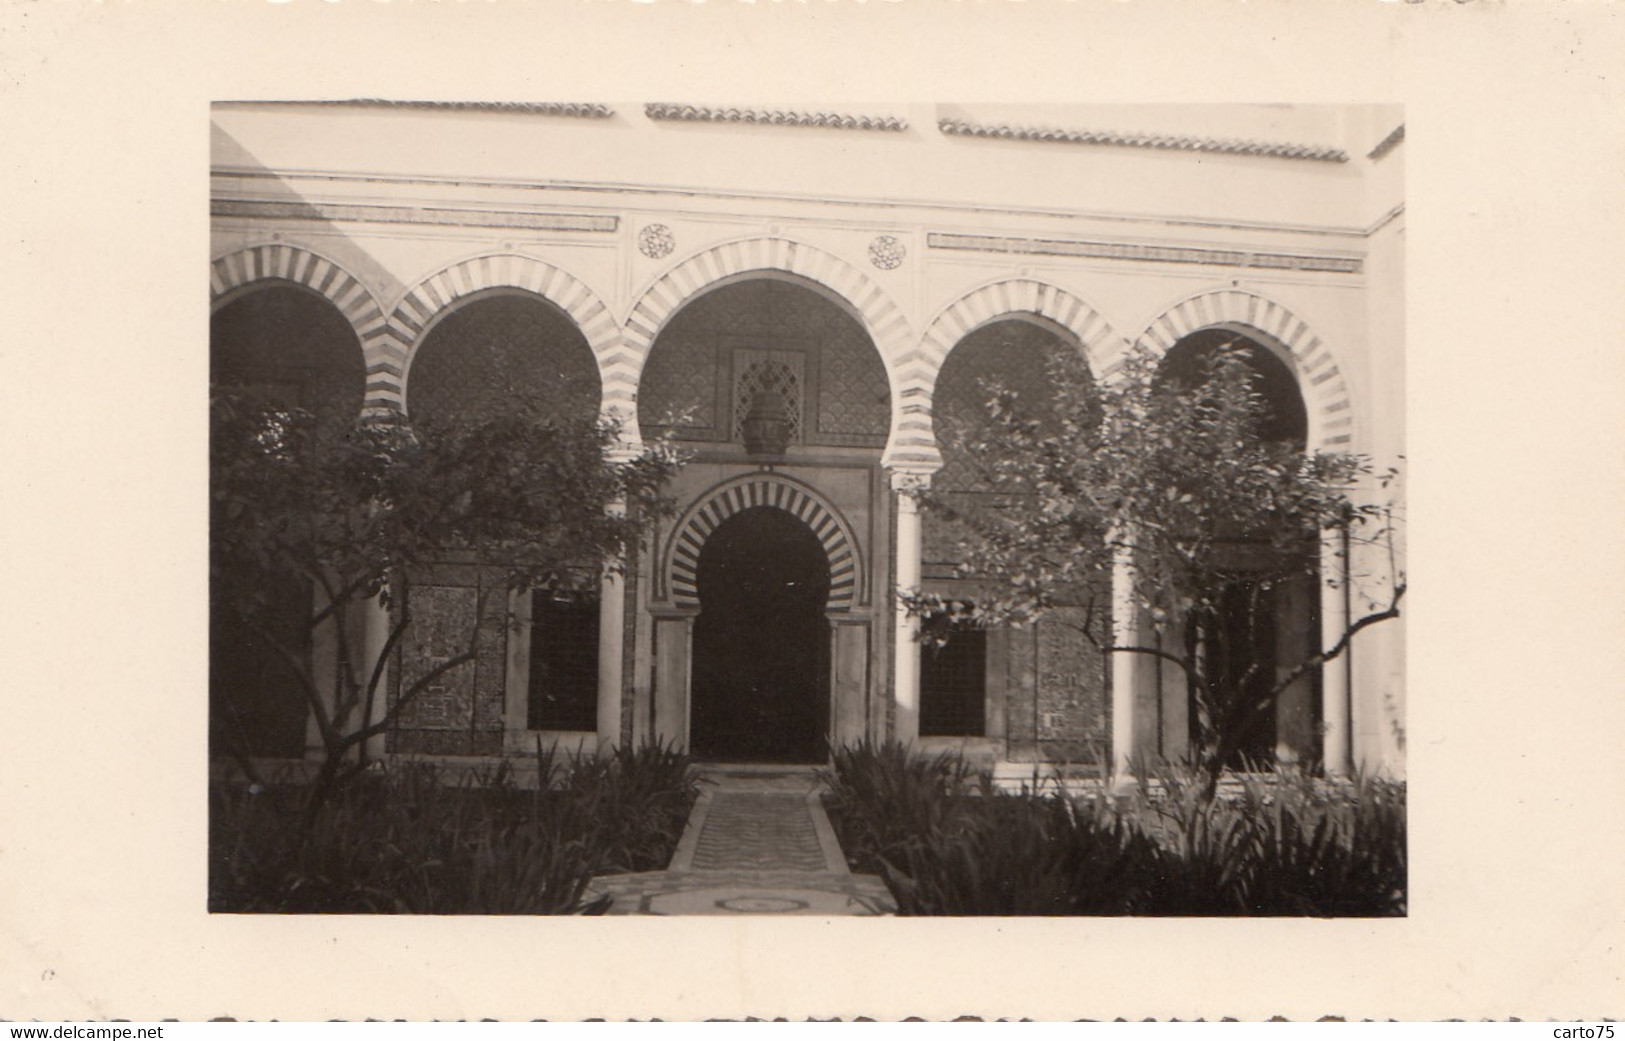 Photographie - Croisière En Méditerranée - Tunisie - Tunis Cour Intérieur Du Musée Ottoman - Fotografie